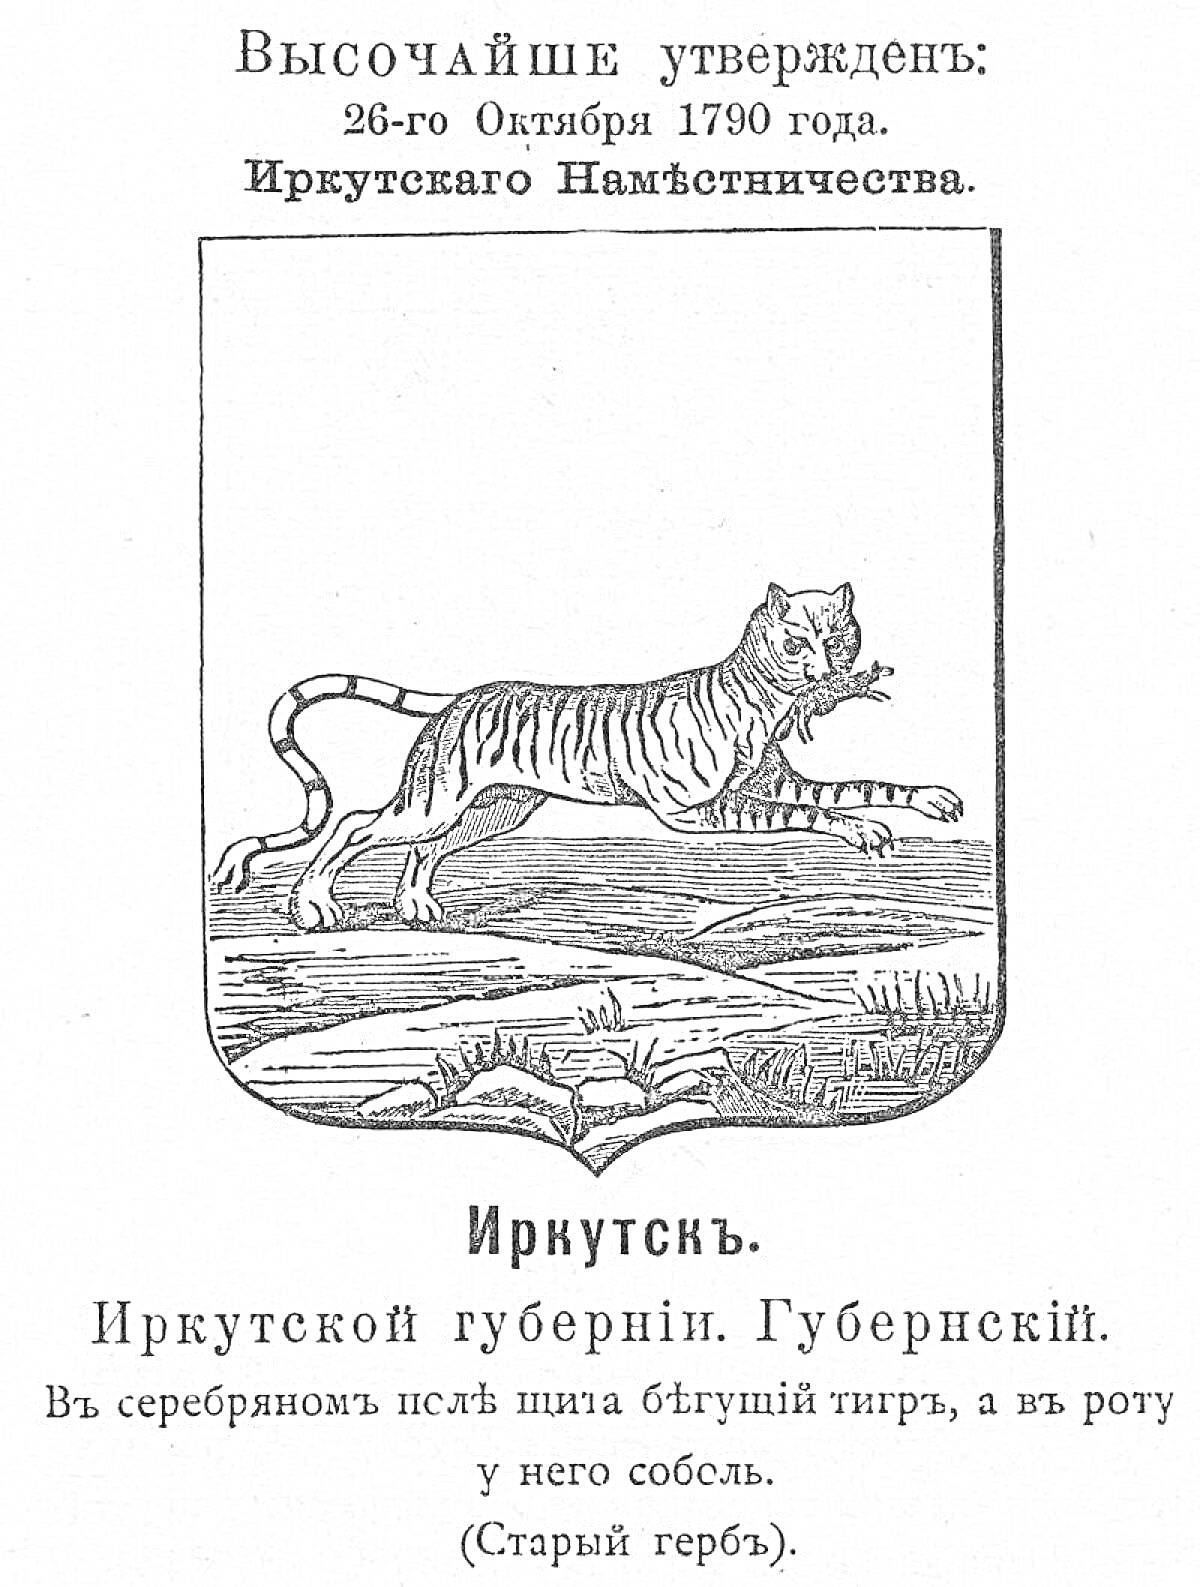 Раскраска Герб Иркутска с изображением тигра, держащего в пасти соболя, утвержденный 26 октября 1790 года